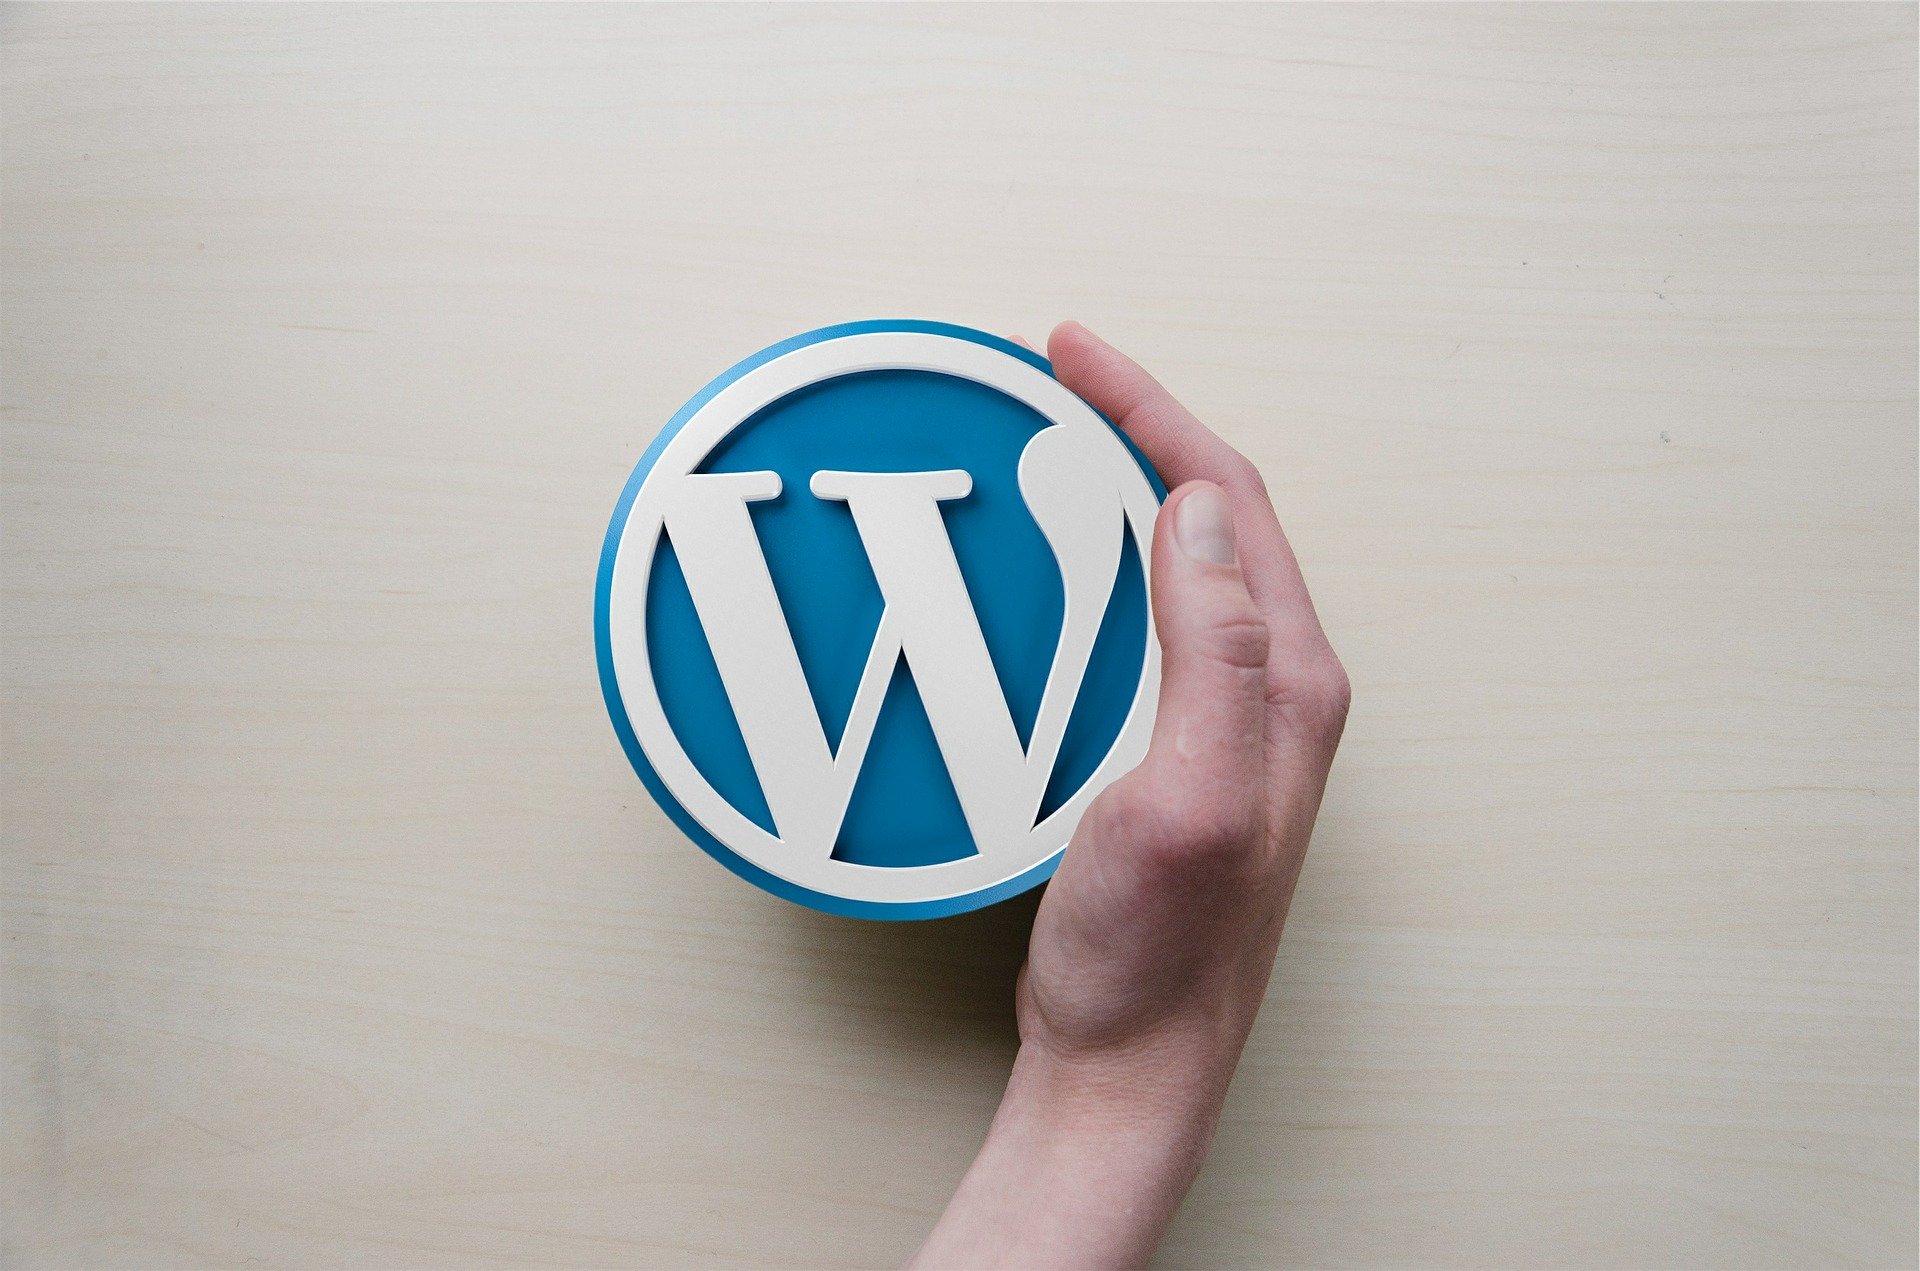 Strony na Wordpress - dlaczego warto?